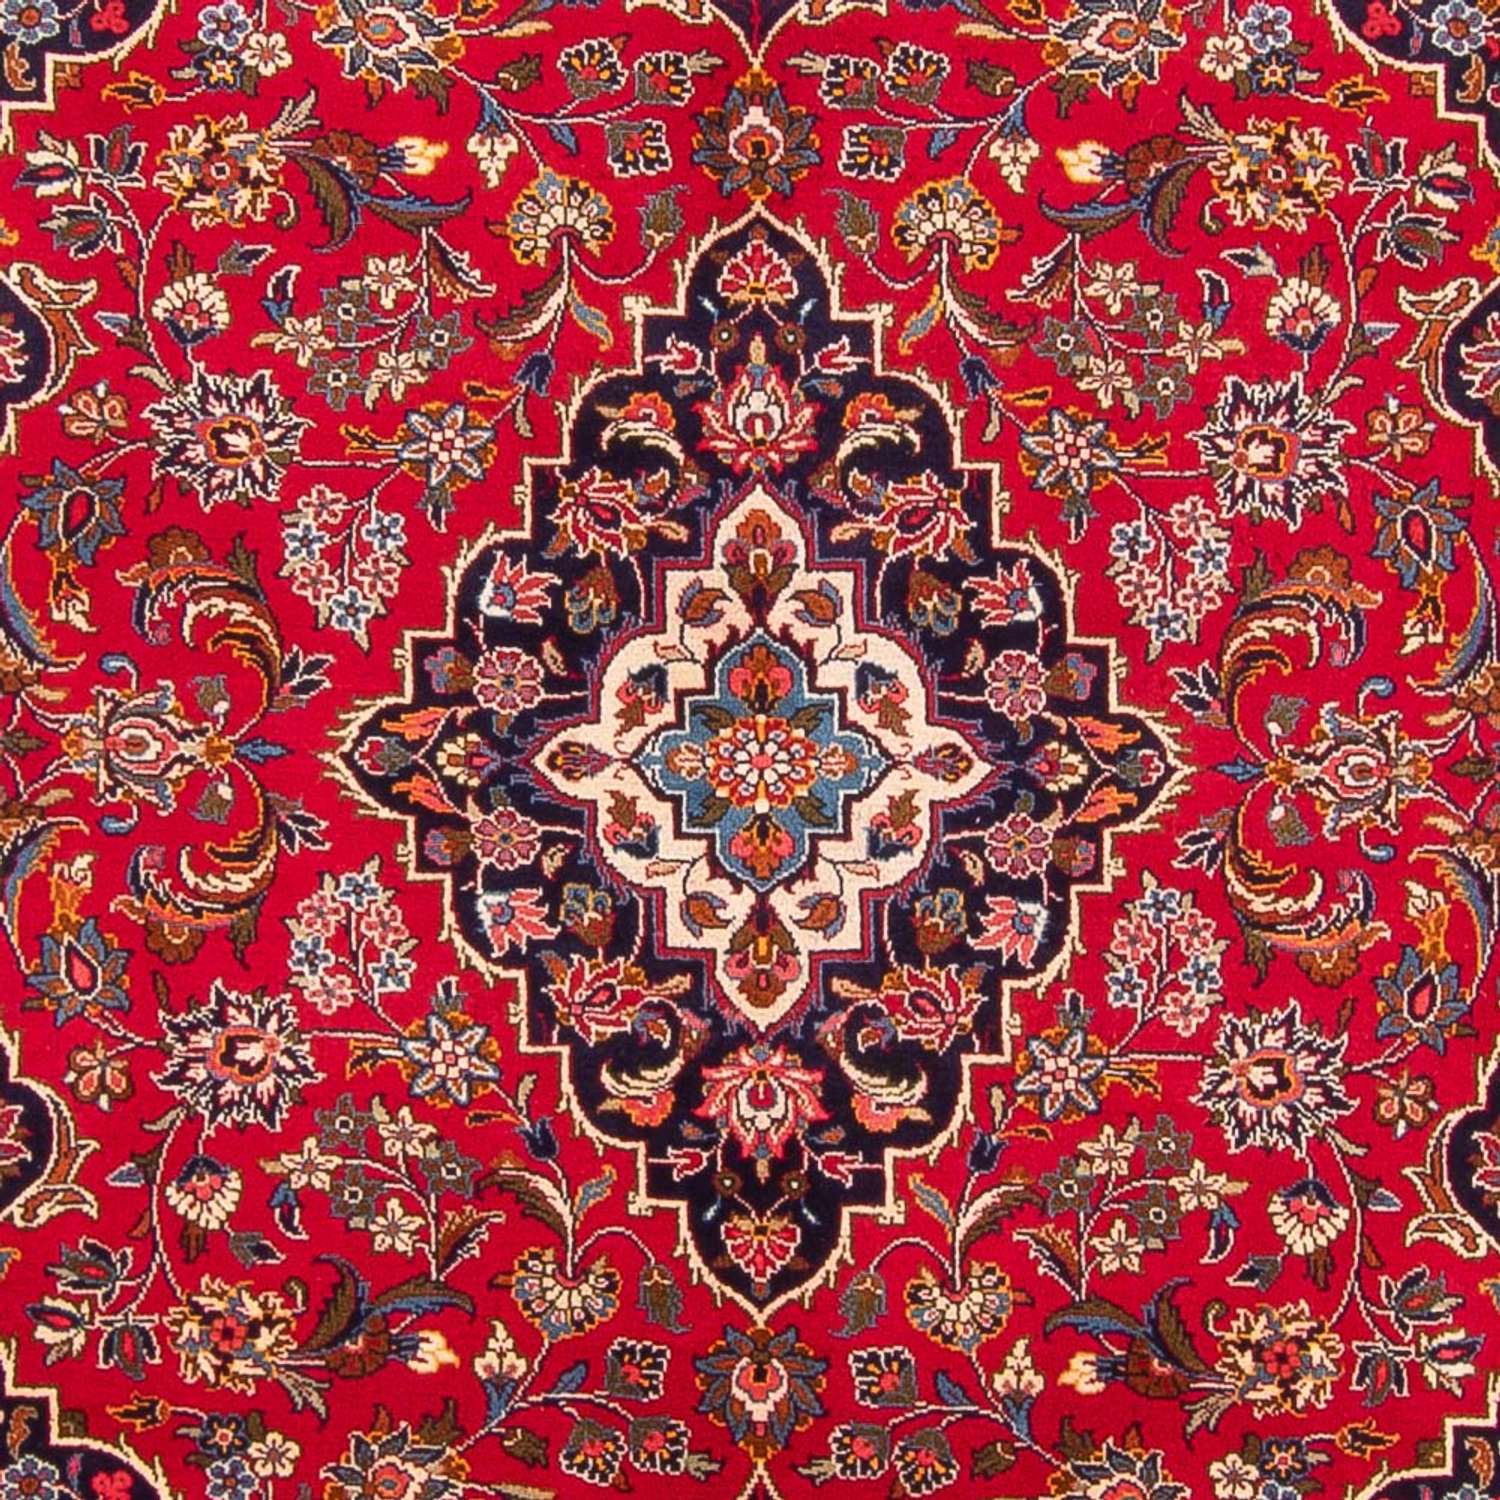 Alfombra persa - Keshan - 293 x 195 cm - rojo